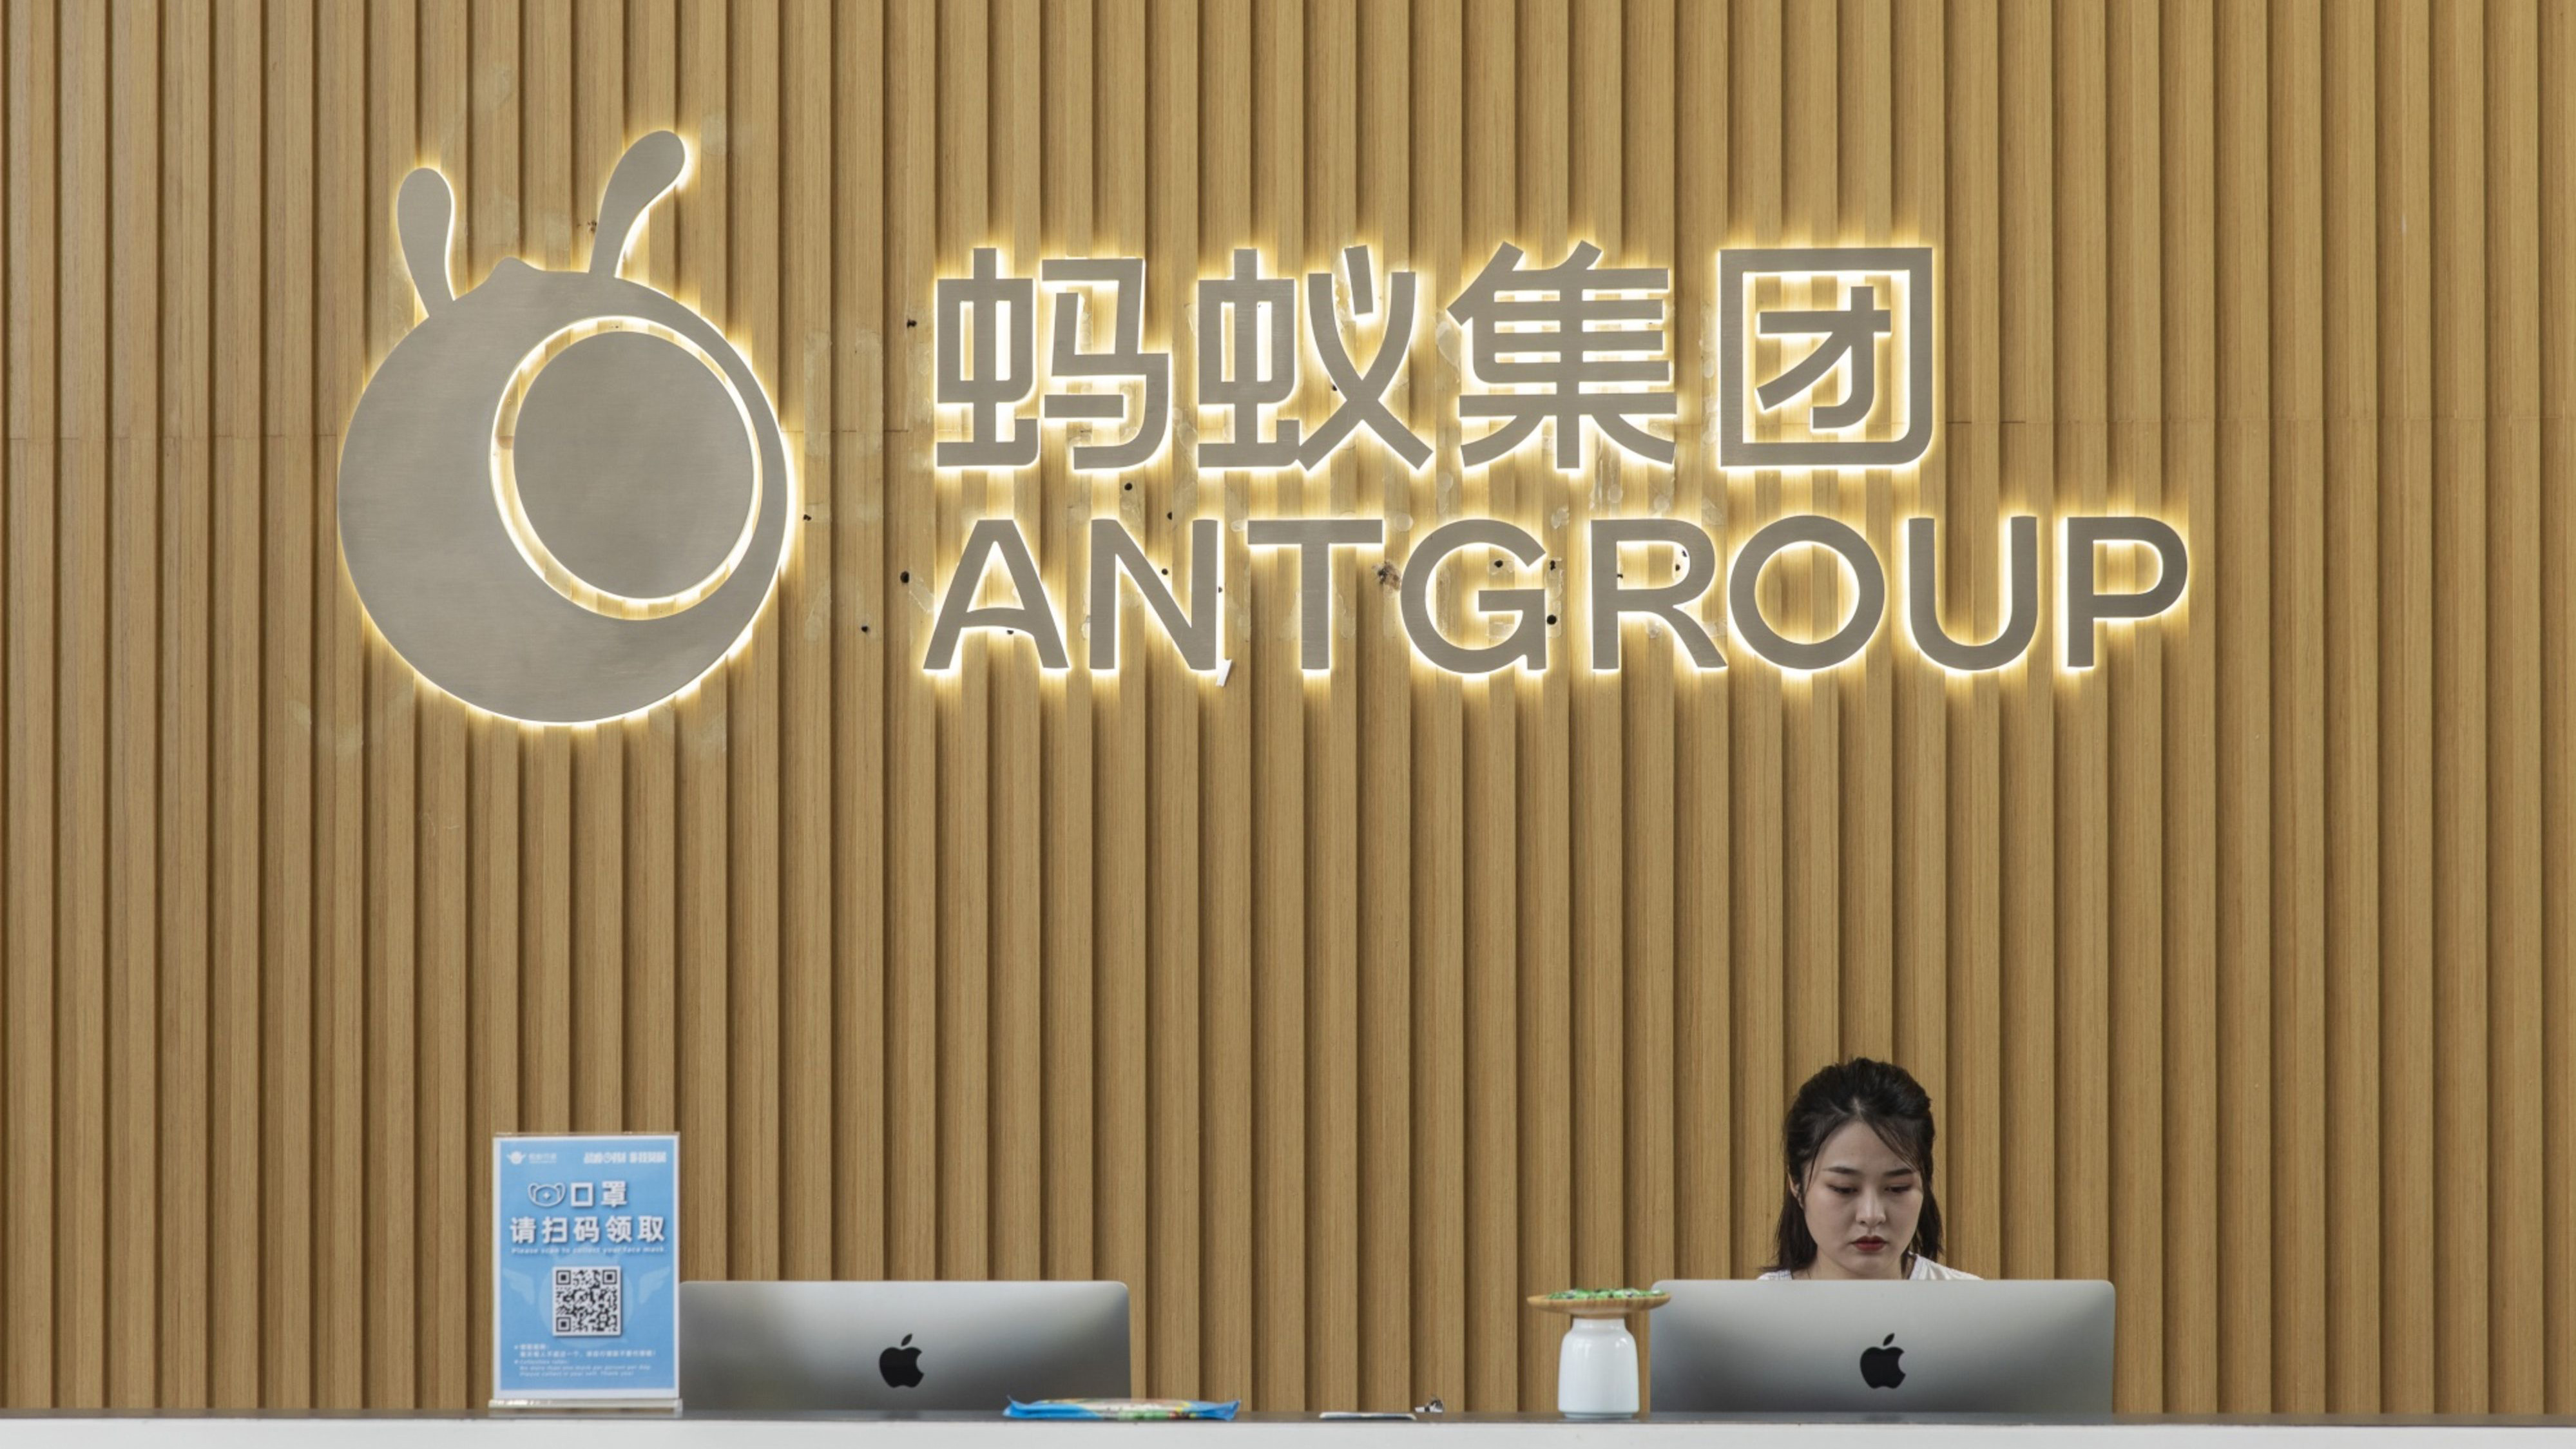 Una de la entradas de la oficina central de Ant Group, en China (Qilai Shen/Bloomberg)